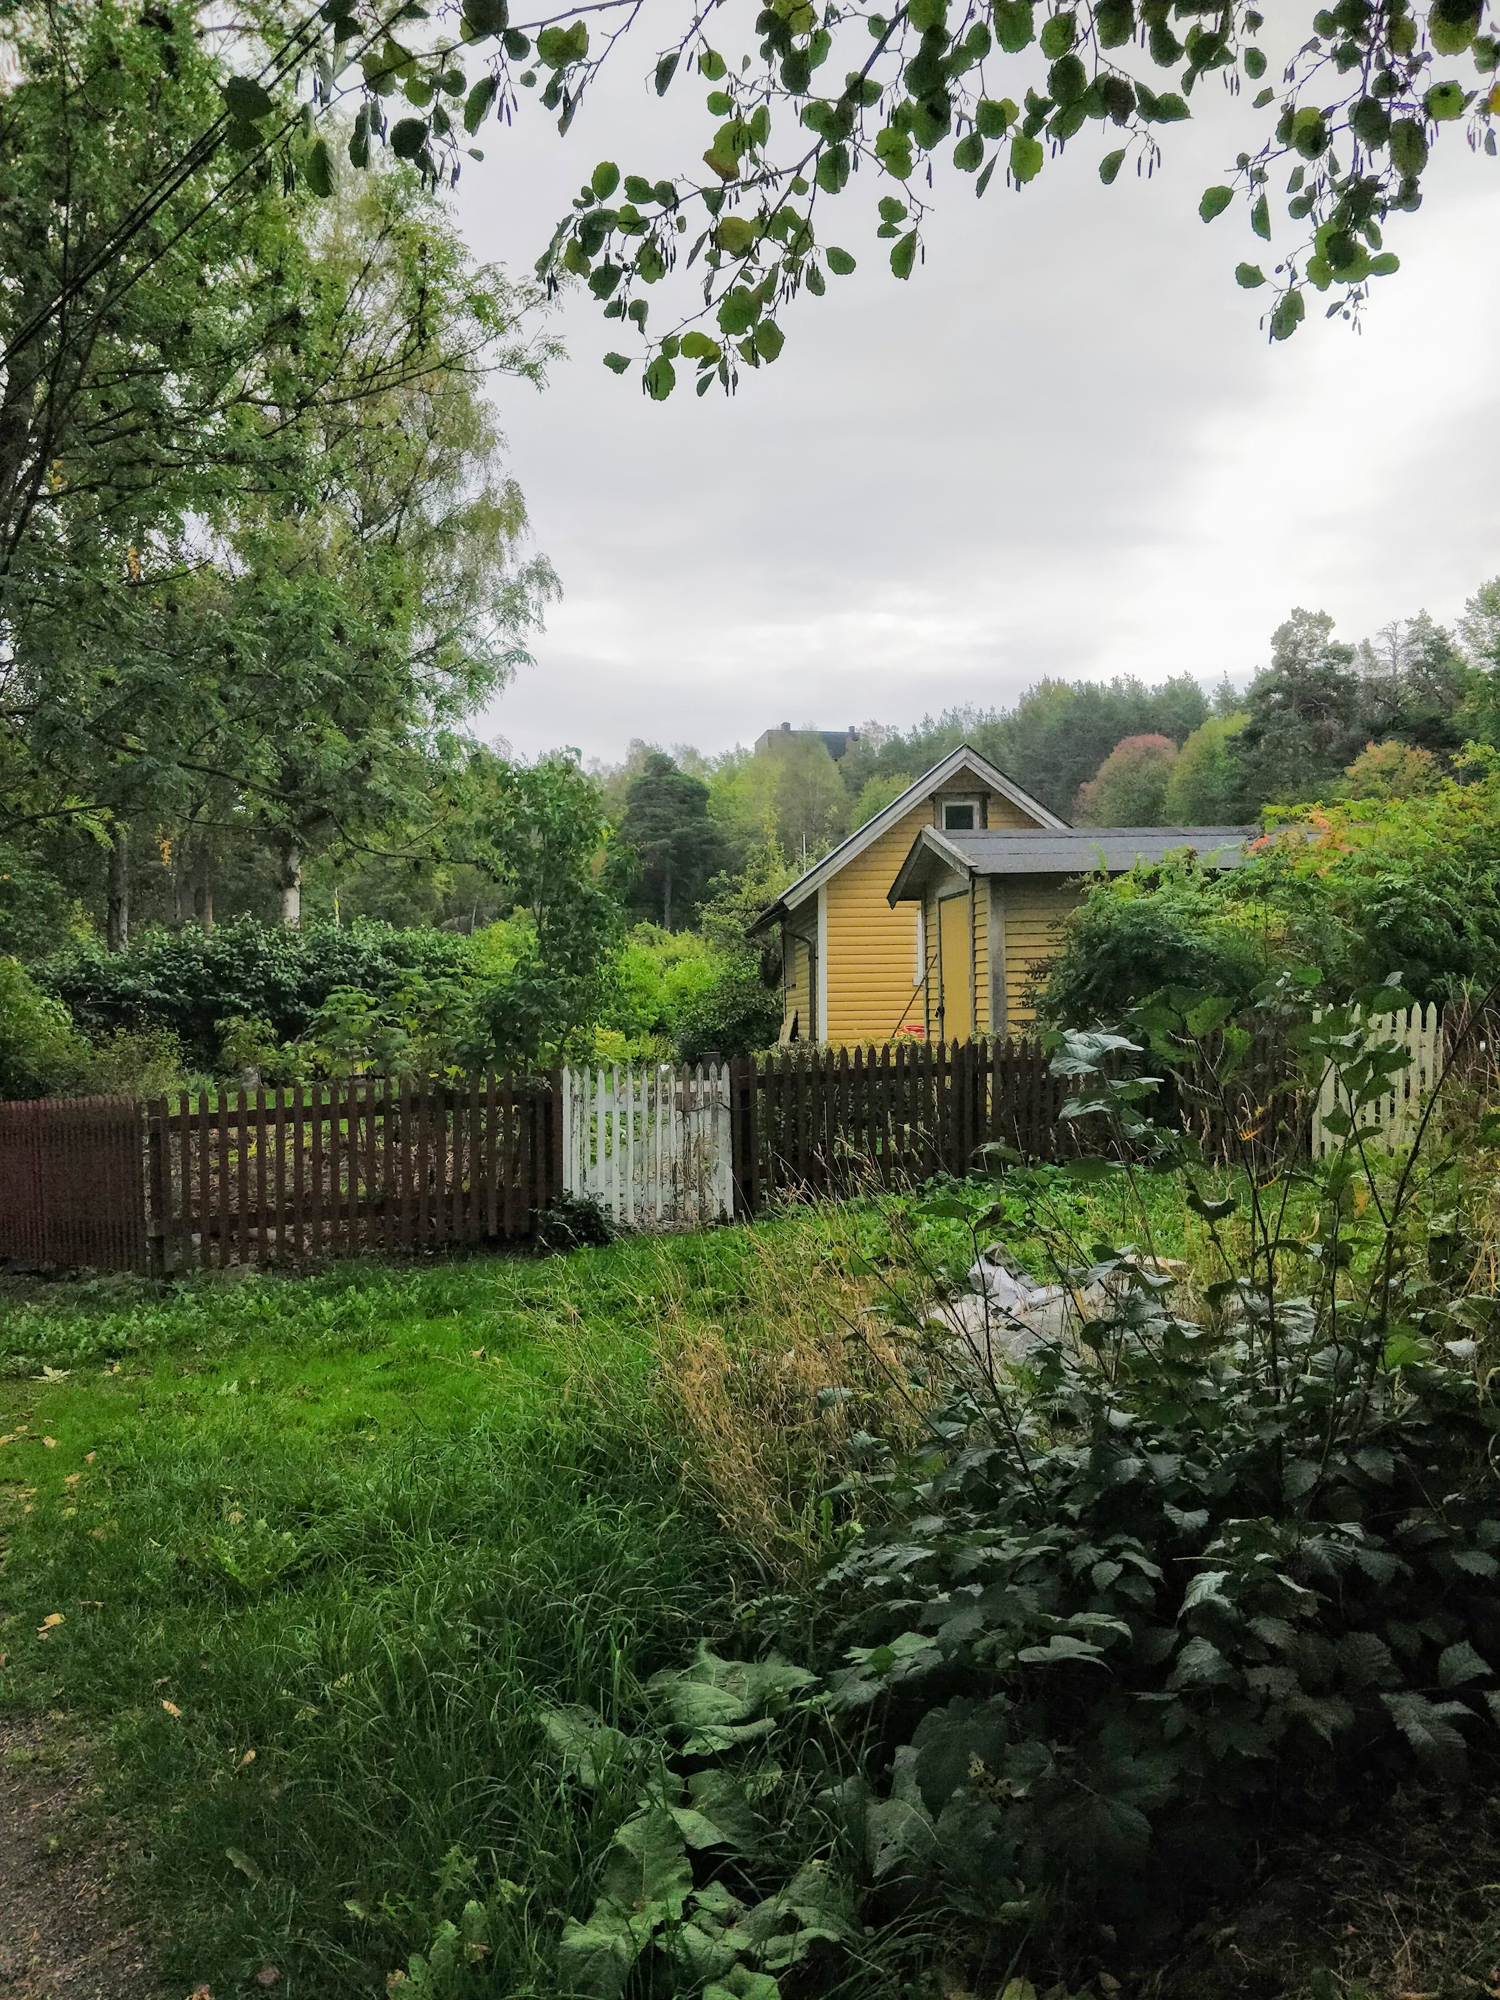 Image de référence - un jardin communal avec une cabane.